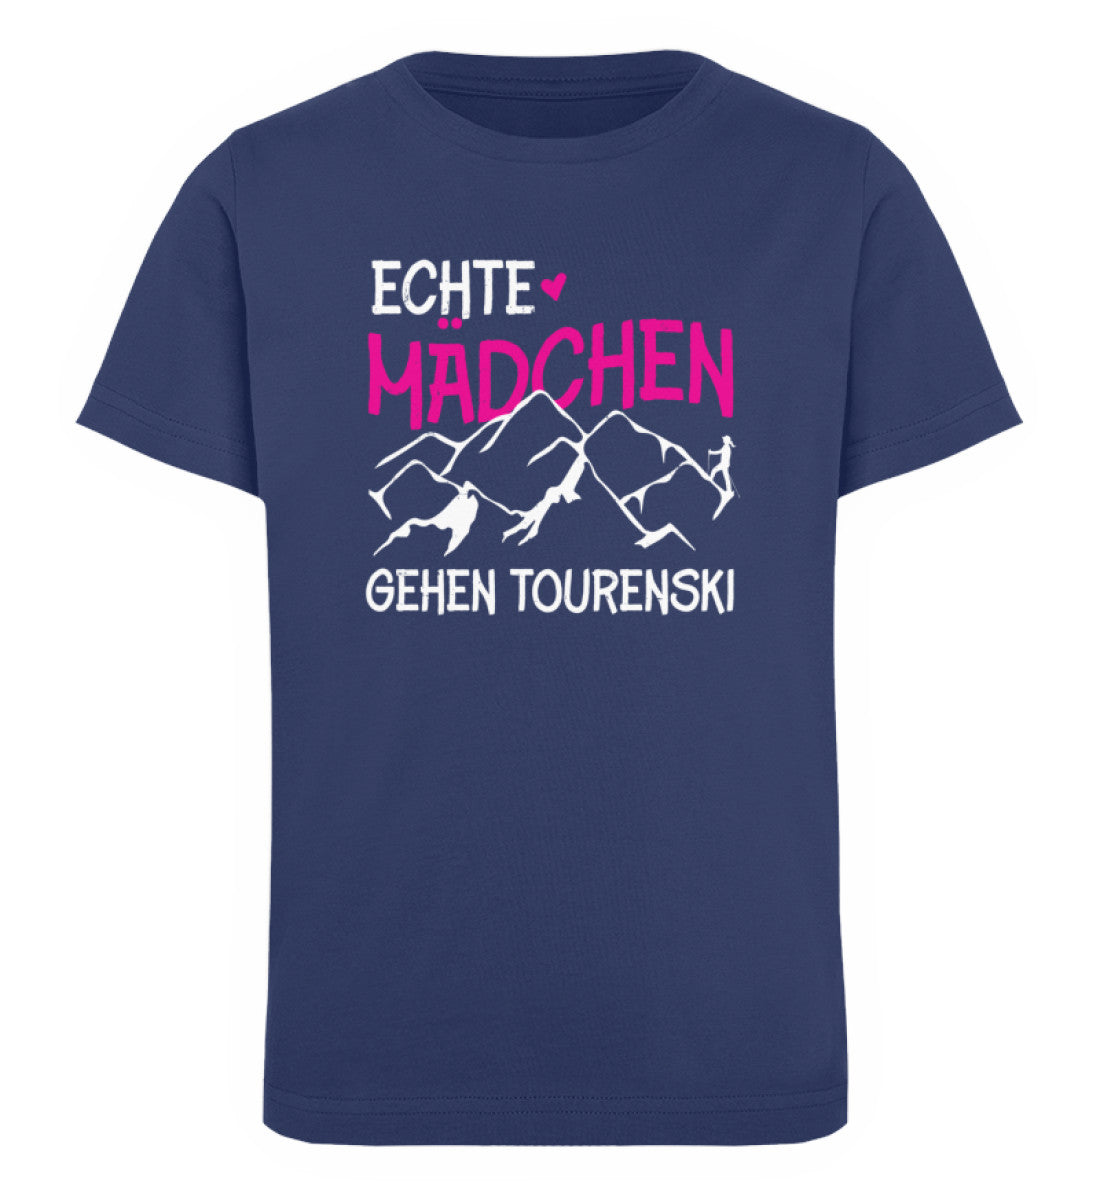 Echte Mädchen gehen Tourenski - Kinder Premium Organic T-Shirt Navyblau